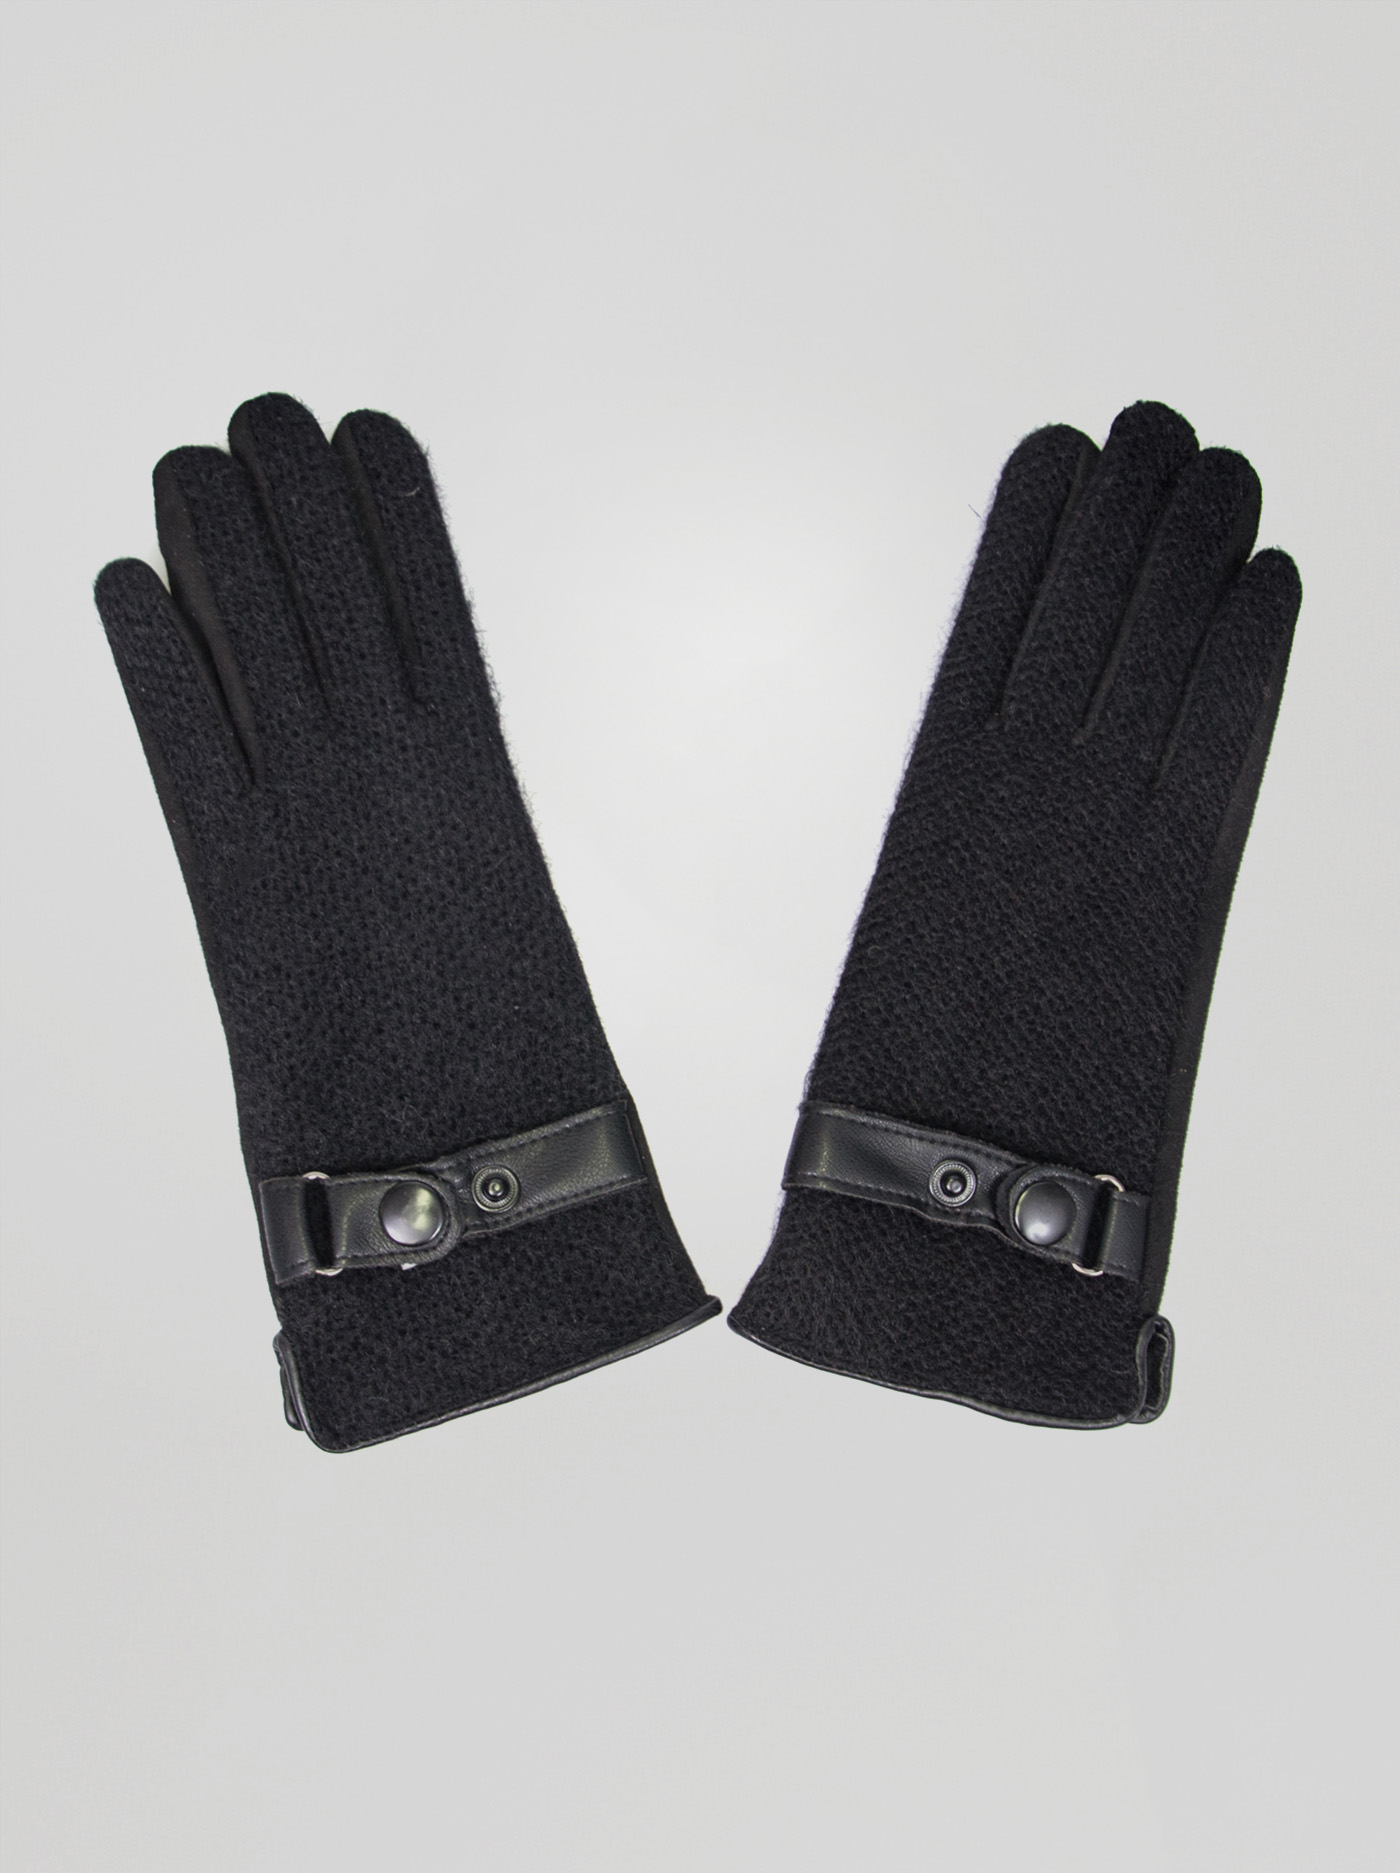 Black gloves image 2